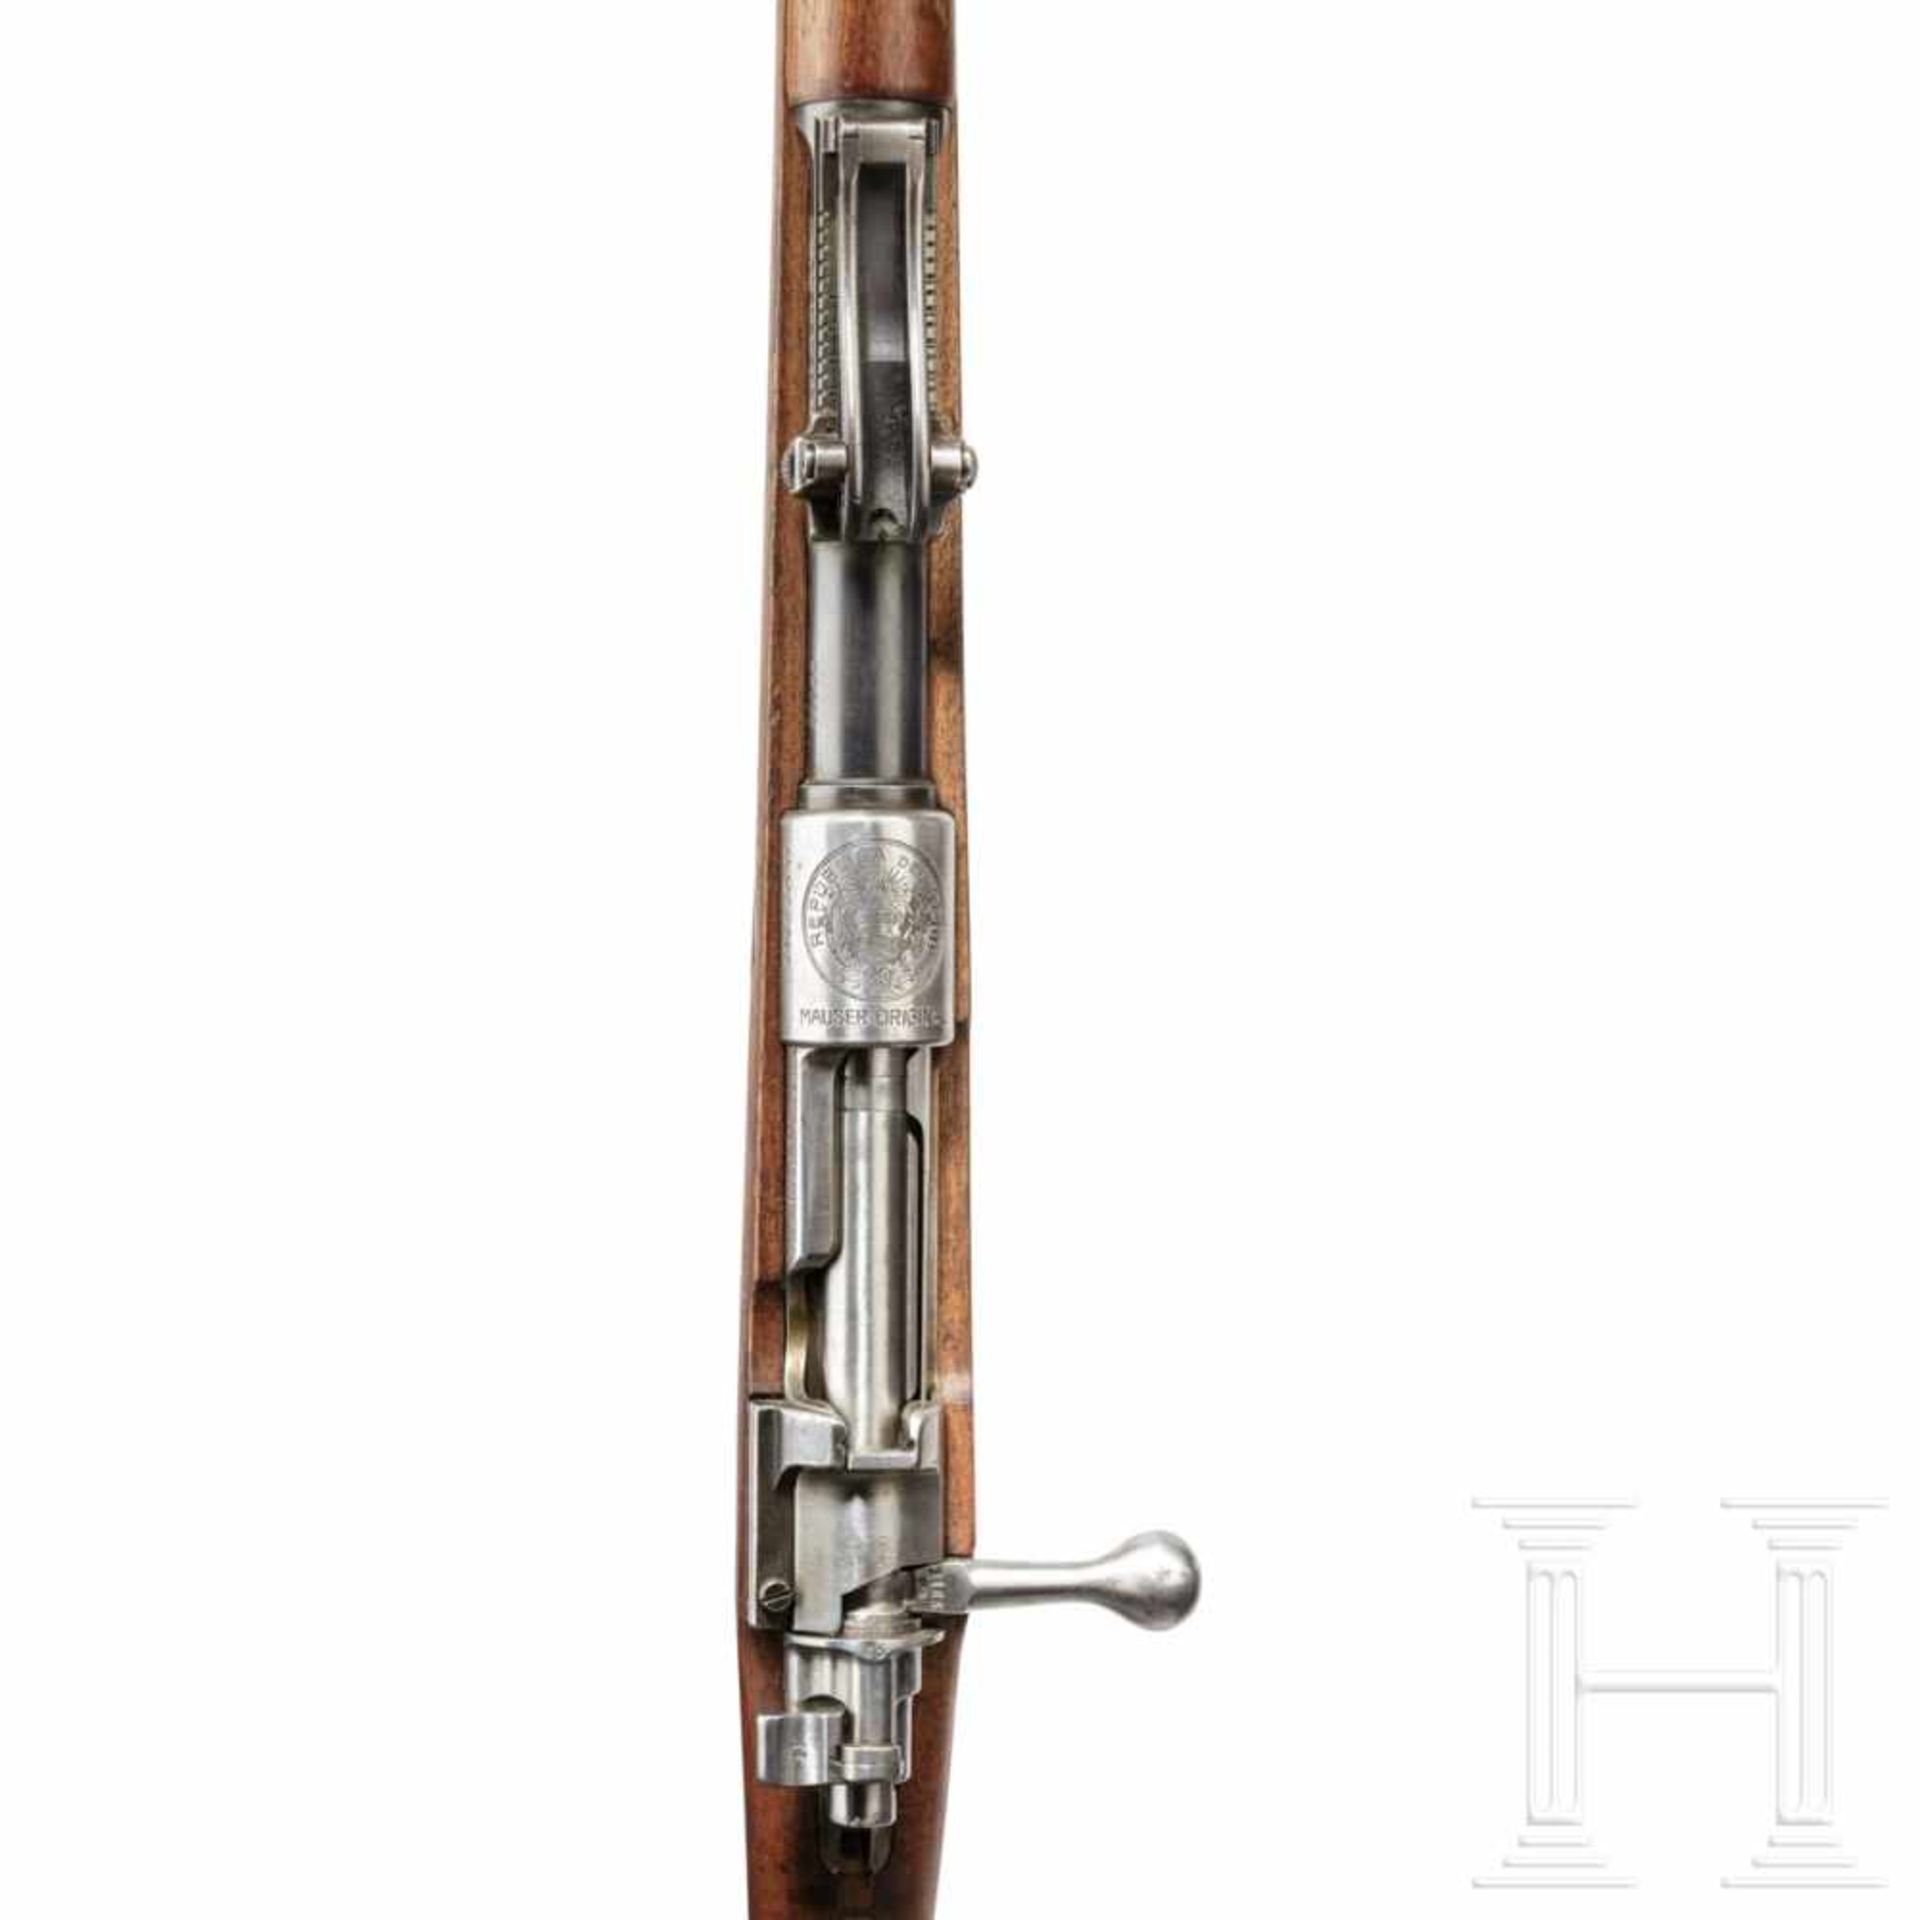 Peru - Gewehr Mauser Mod. 1909Kal. 7,65x53, Nr. 22165, nummerngleich. Blanker Lauf. Fünfschüssig. - Bild 3 aus 3